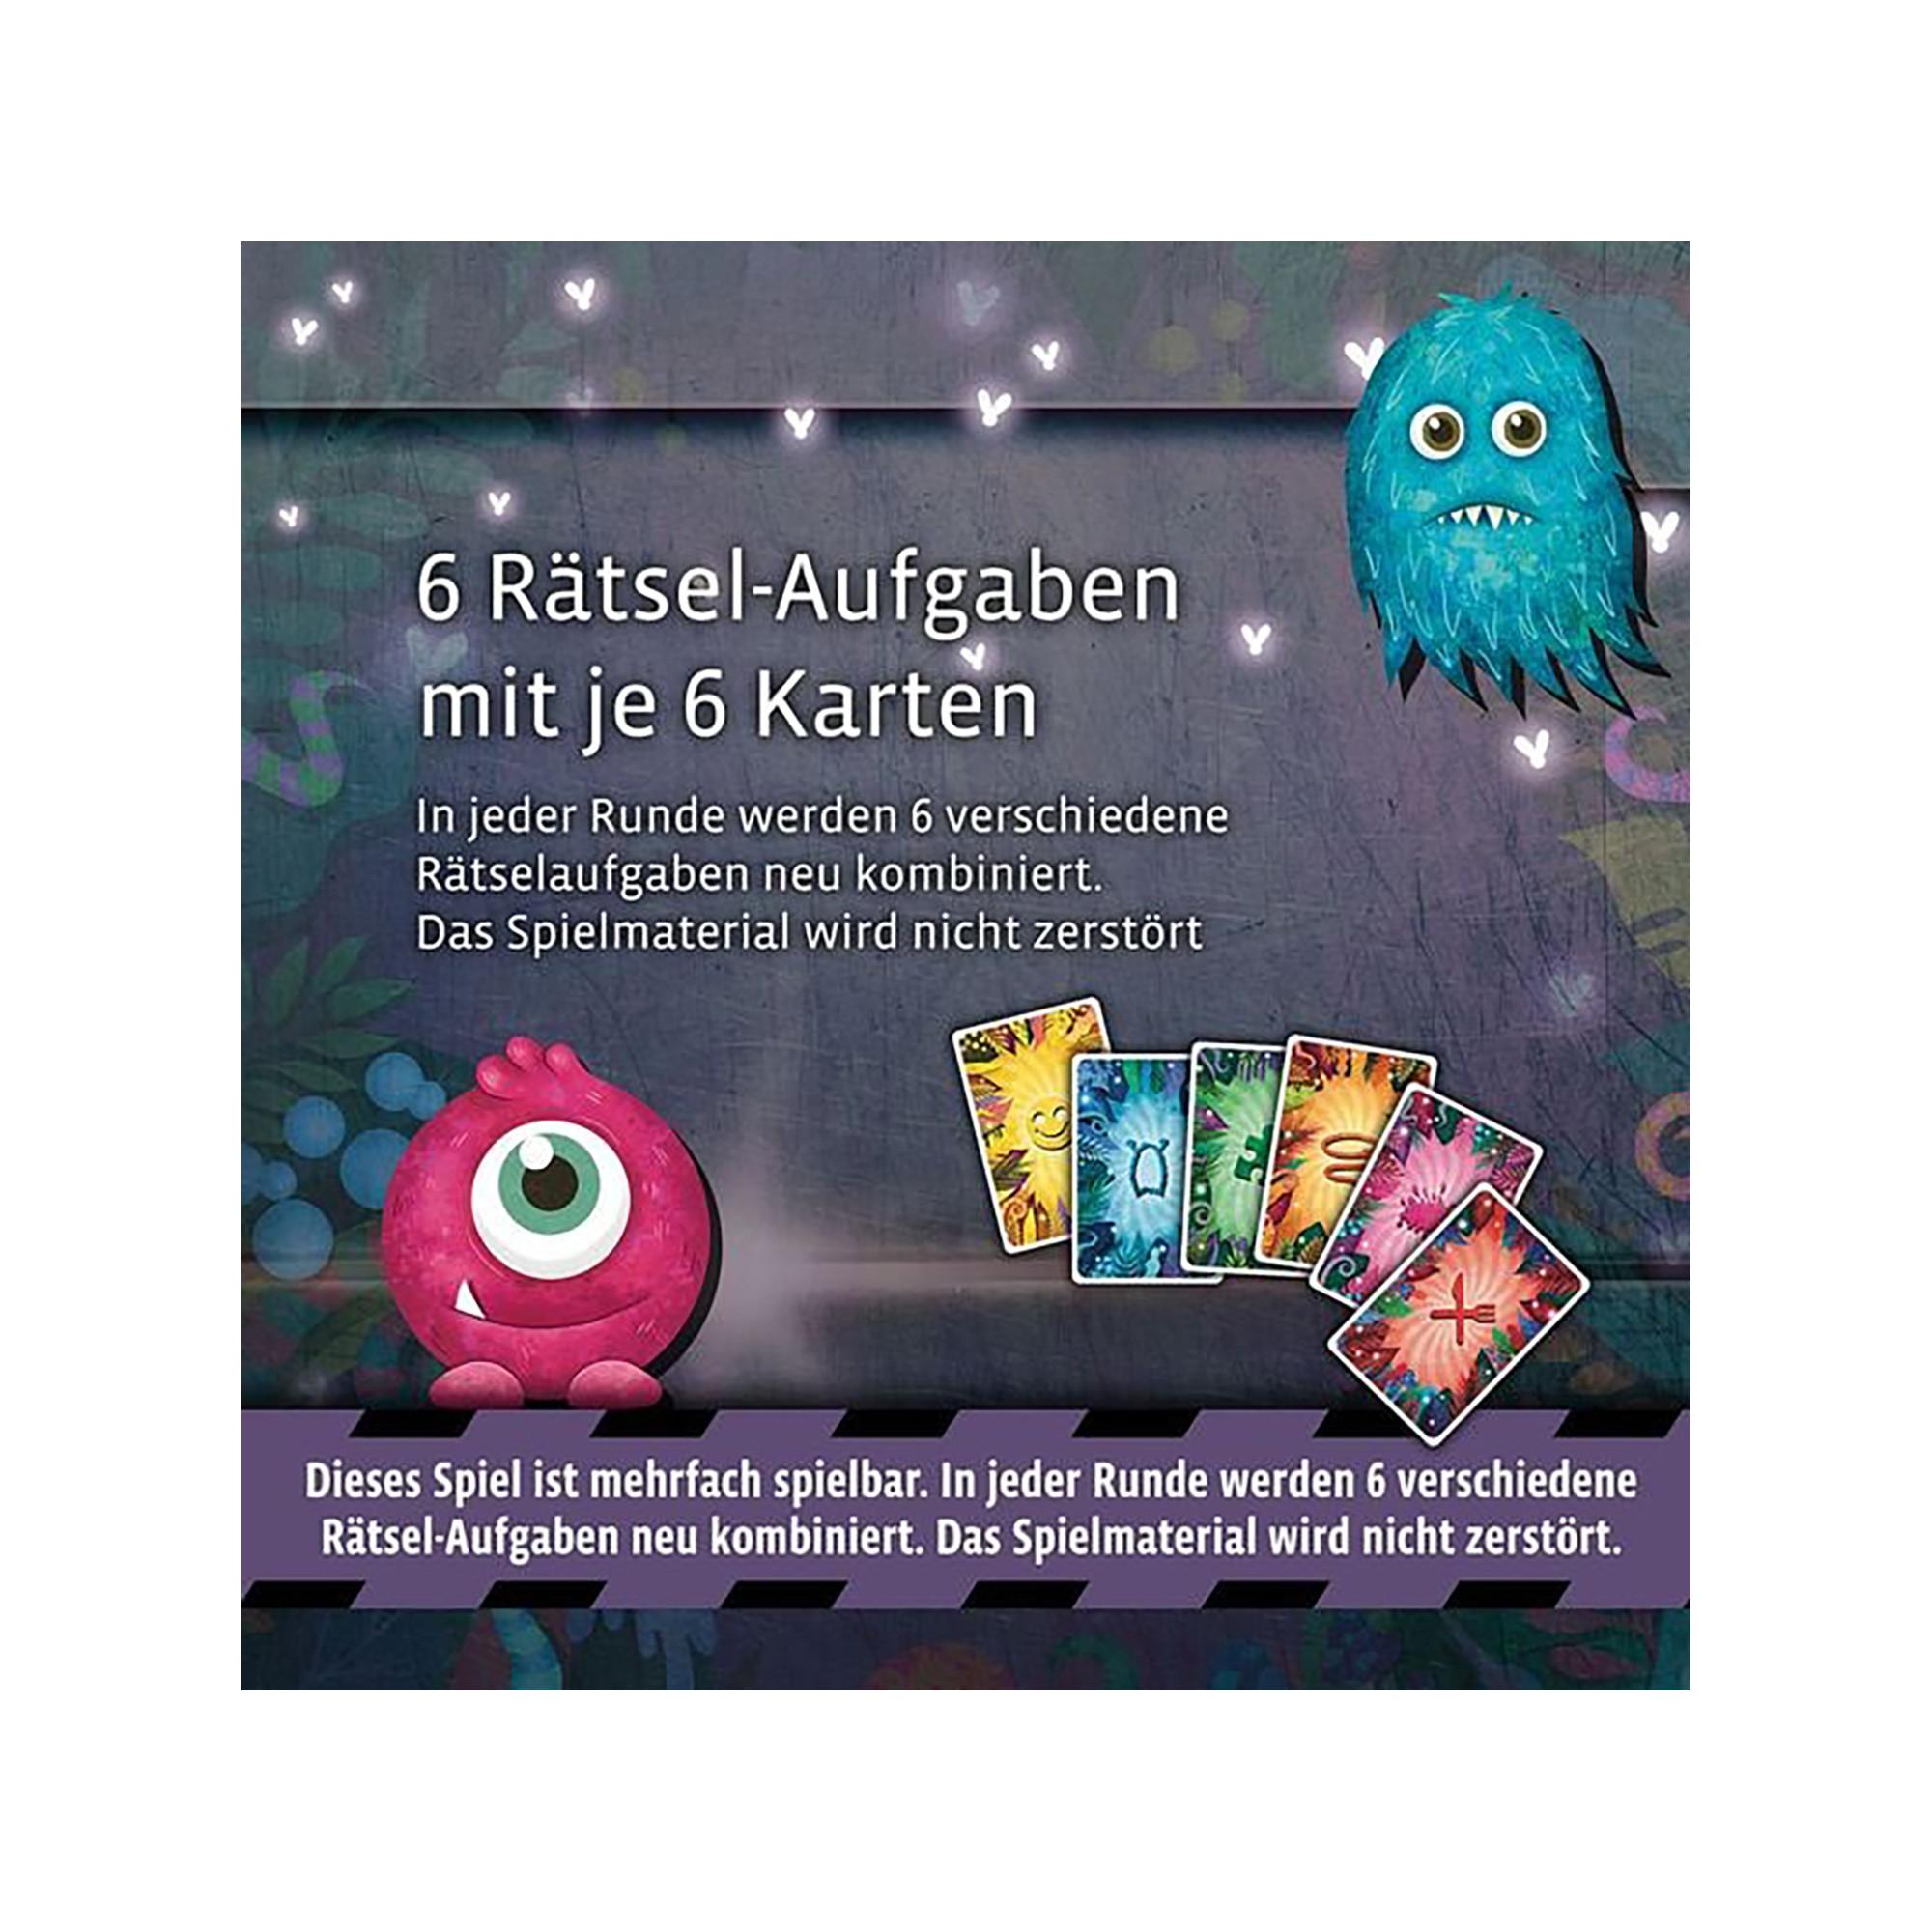 Kosmos  EXIT Kids Monstermässiger Rätselspass, deutsch 